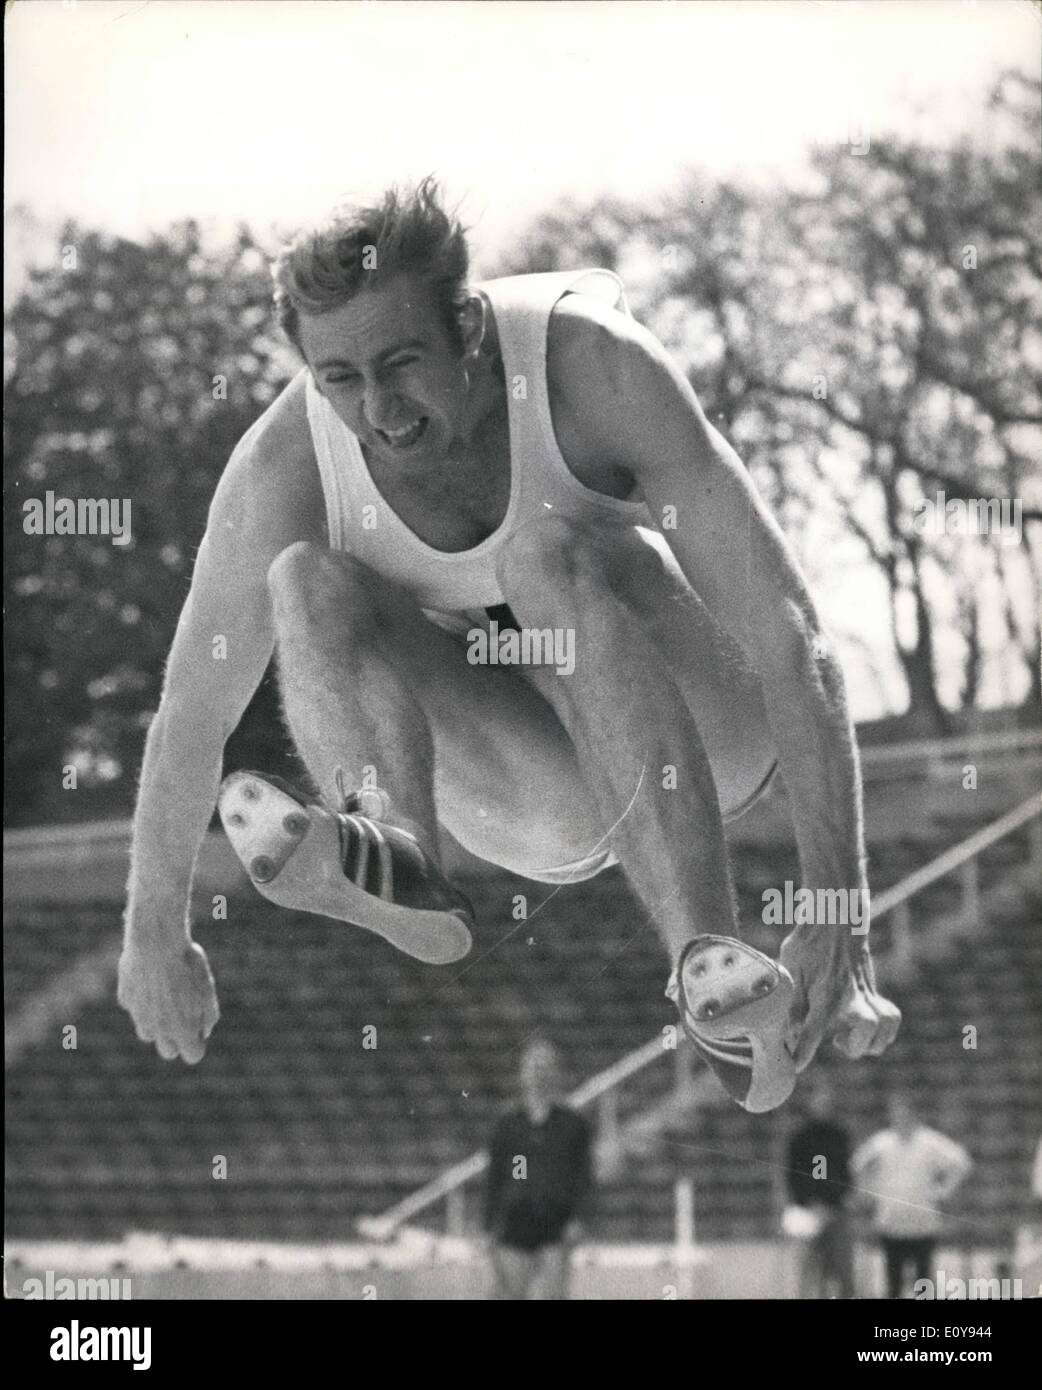 Mai 05, 1969 - David Hemery au pentathlon : David Hemery, le champion olympique de 400 mètres haies, aujourd'hui a commencé sa candidature pour une place dans l'équipe de decathlon britannique à Crystal Palace cet après-midi lorsqu'il a pris part à l'pentathlon organisé par l'Union Nationale des statisticiens. Photo montre David Hemery vu la concurrence dans le pentathlon saut à Crystal Palace aujourd'hui. Son meilleur saut est de 23'4Ã Banque D'Images